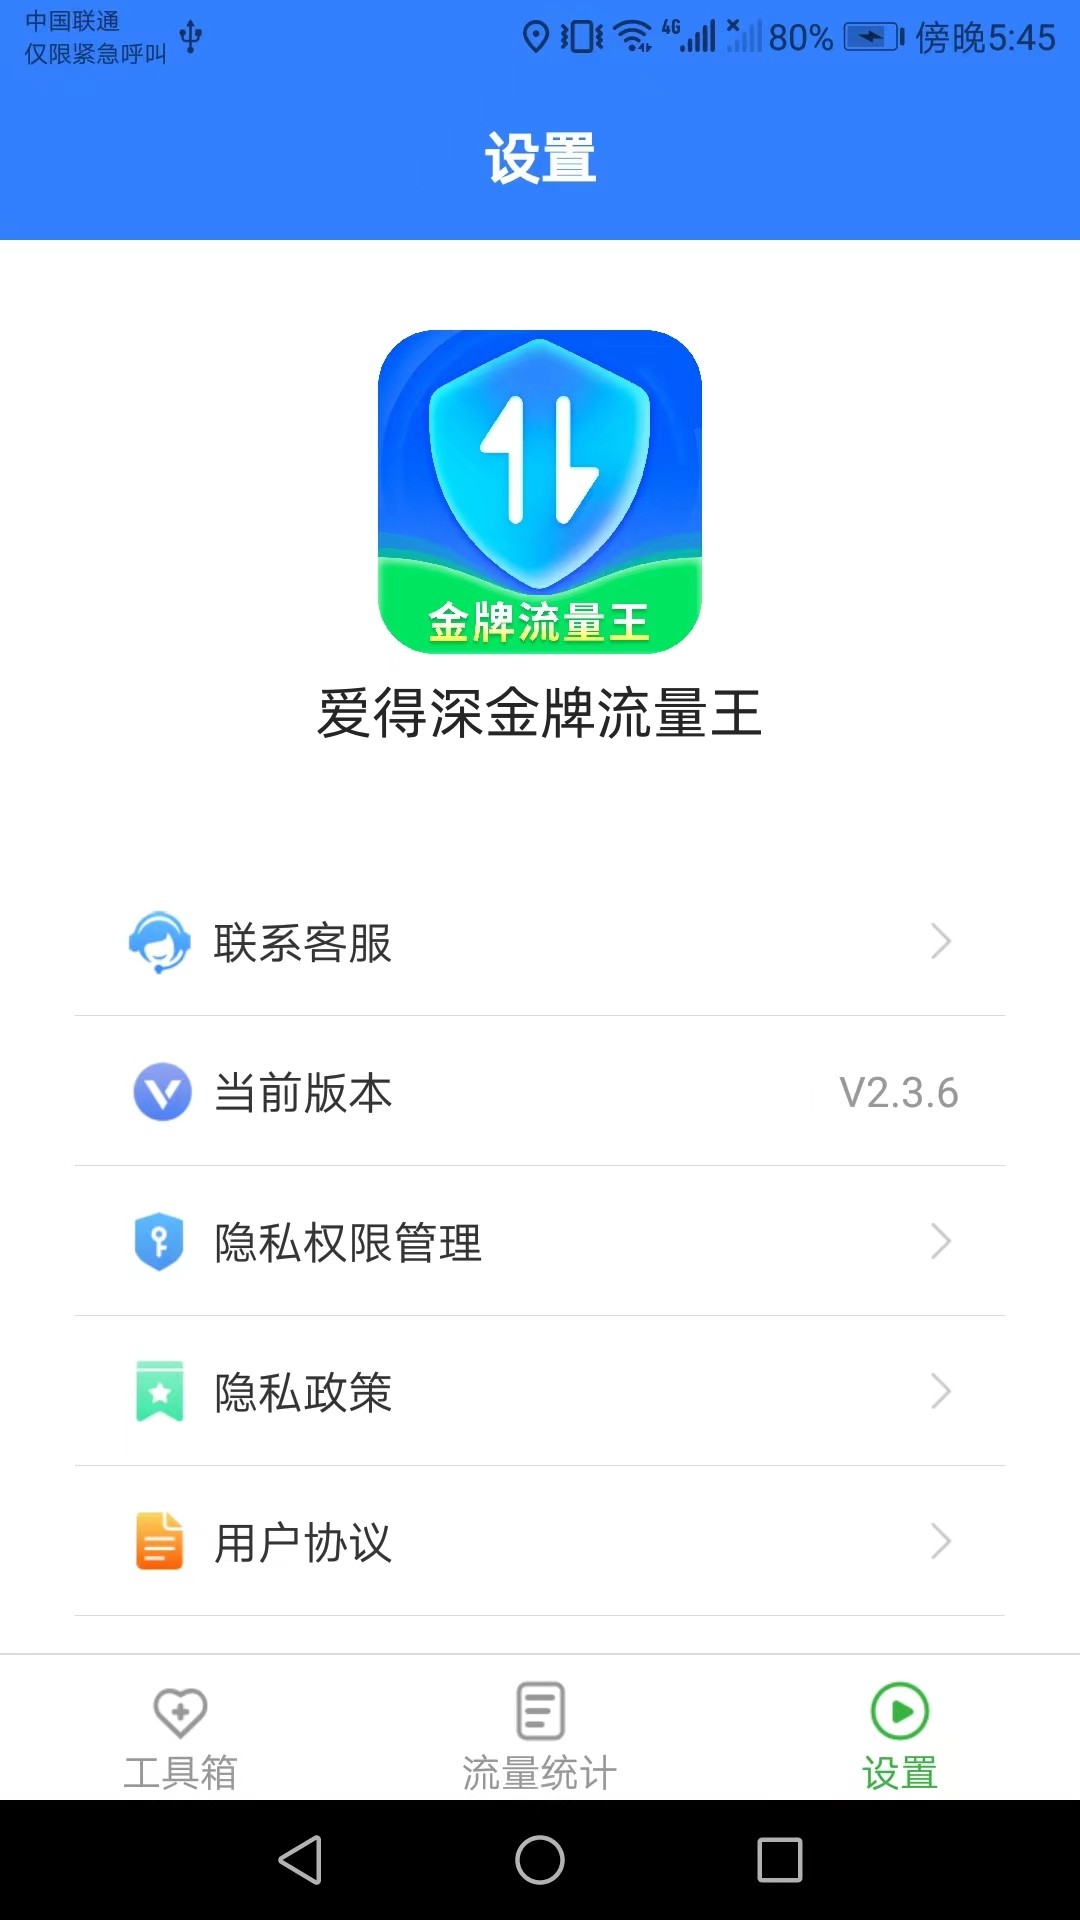 爱得深金牌流量王app下载,爱得深金牌流量王app安卓版 v2.3.6